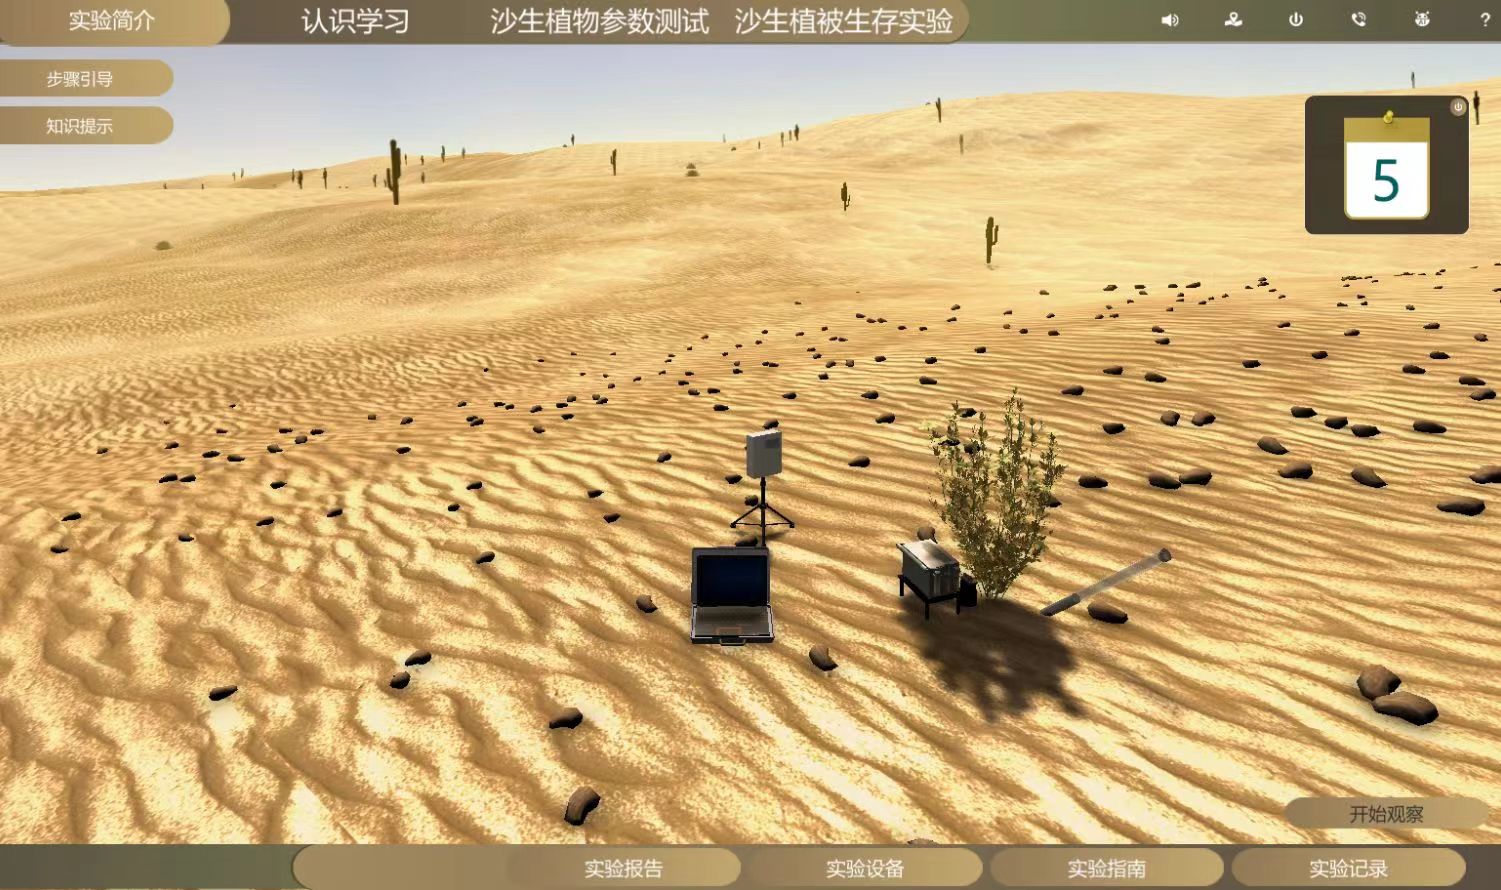 沙生植被监测虚拟仿真实验